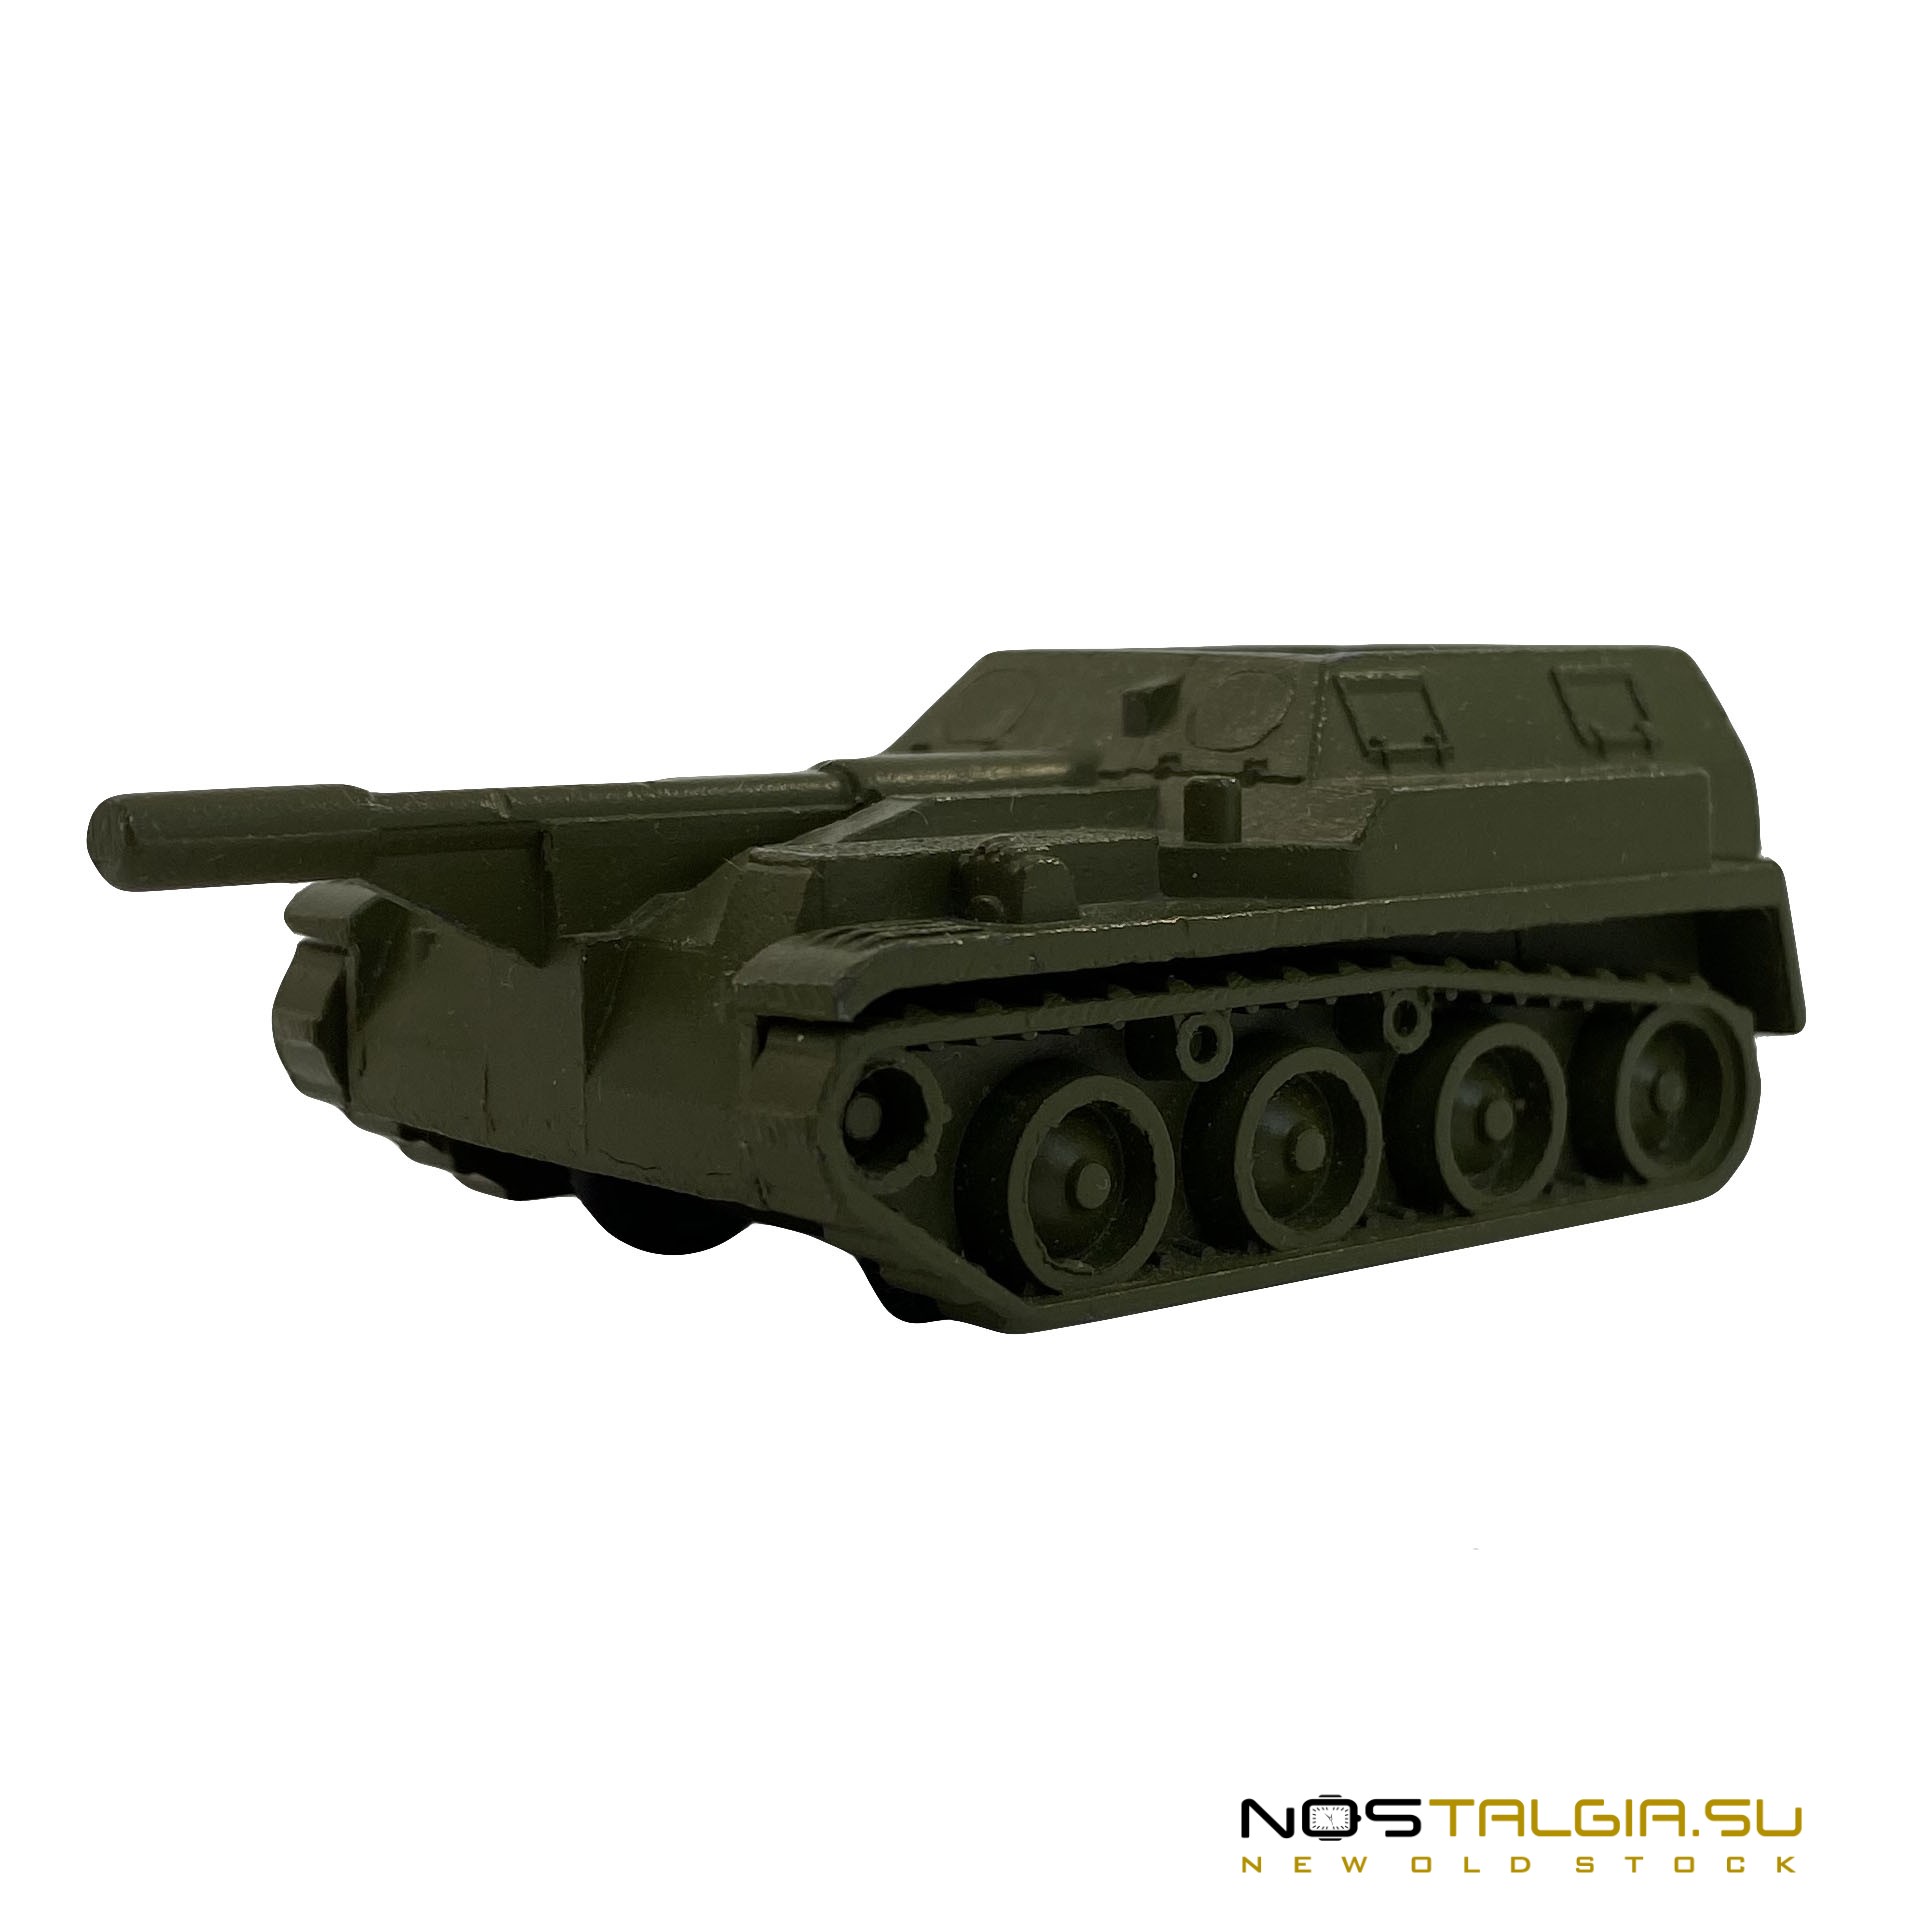 Коллекционная модель "Самоходная артиллерийская установка", металлическая, производство СССР, с хранения 